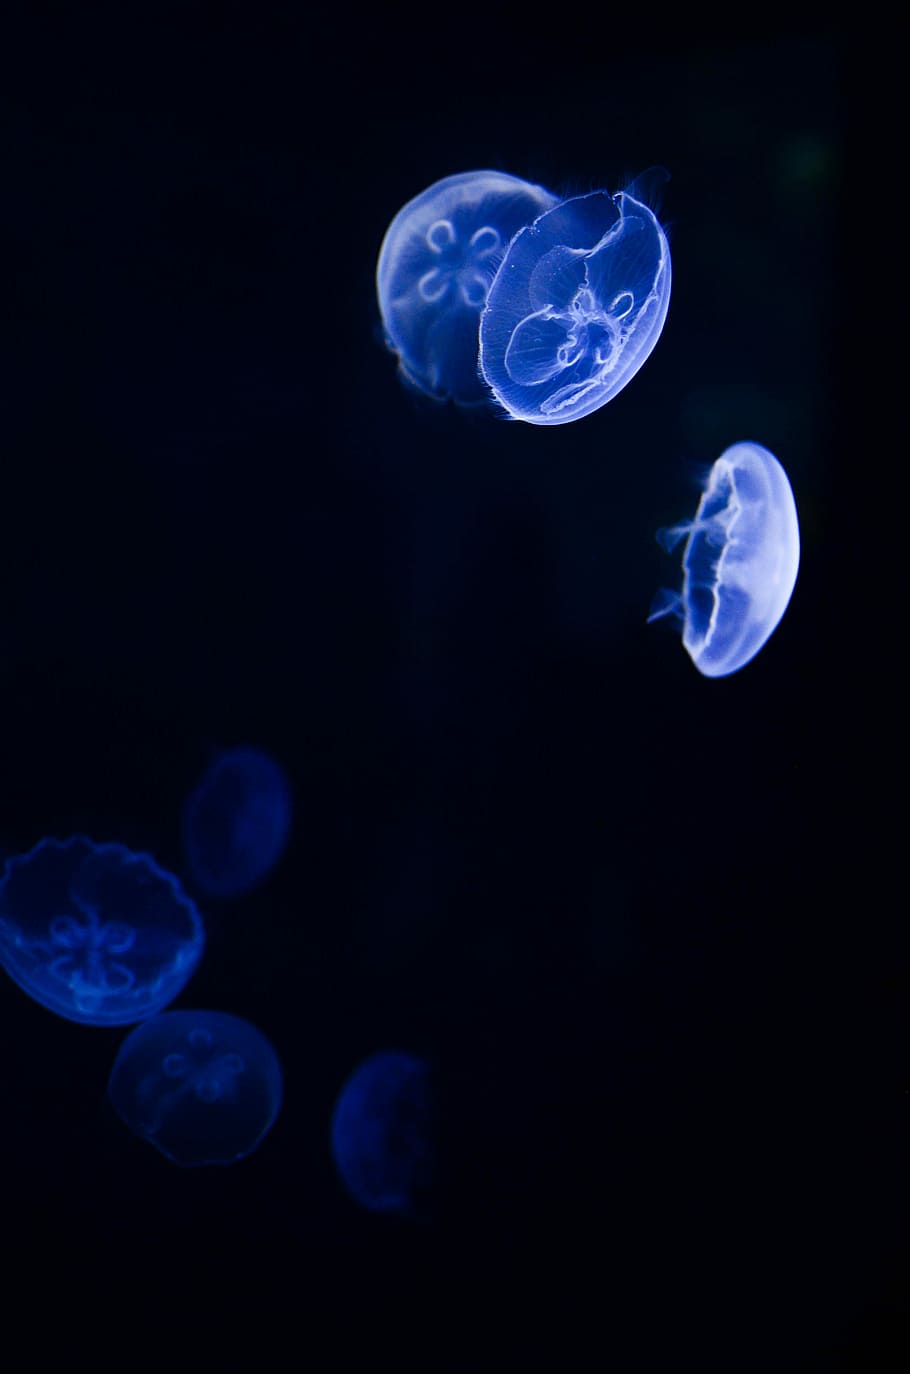 HD wallpaper: white moon jellyfish, underwater photography of white  angelfish | Wallpaper Flare